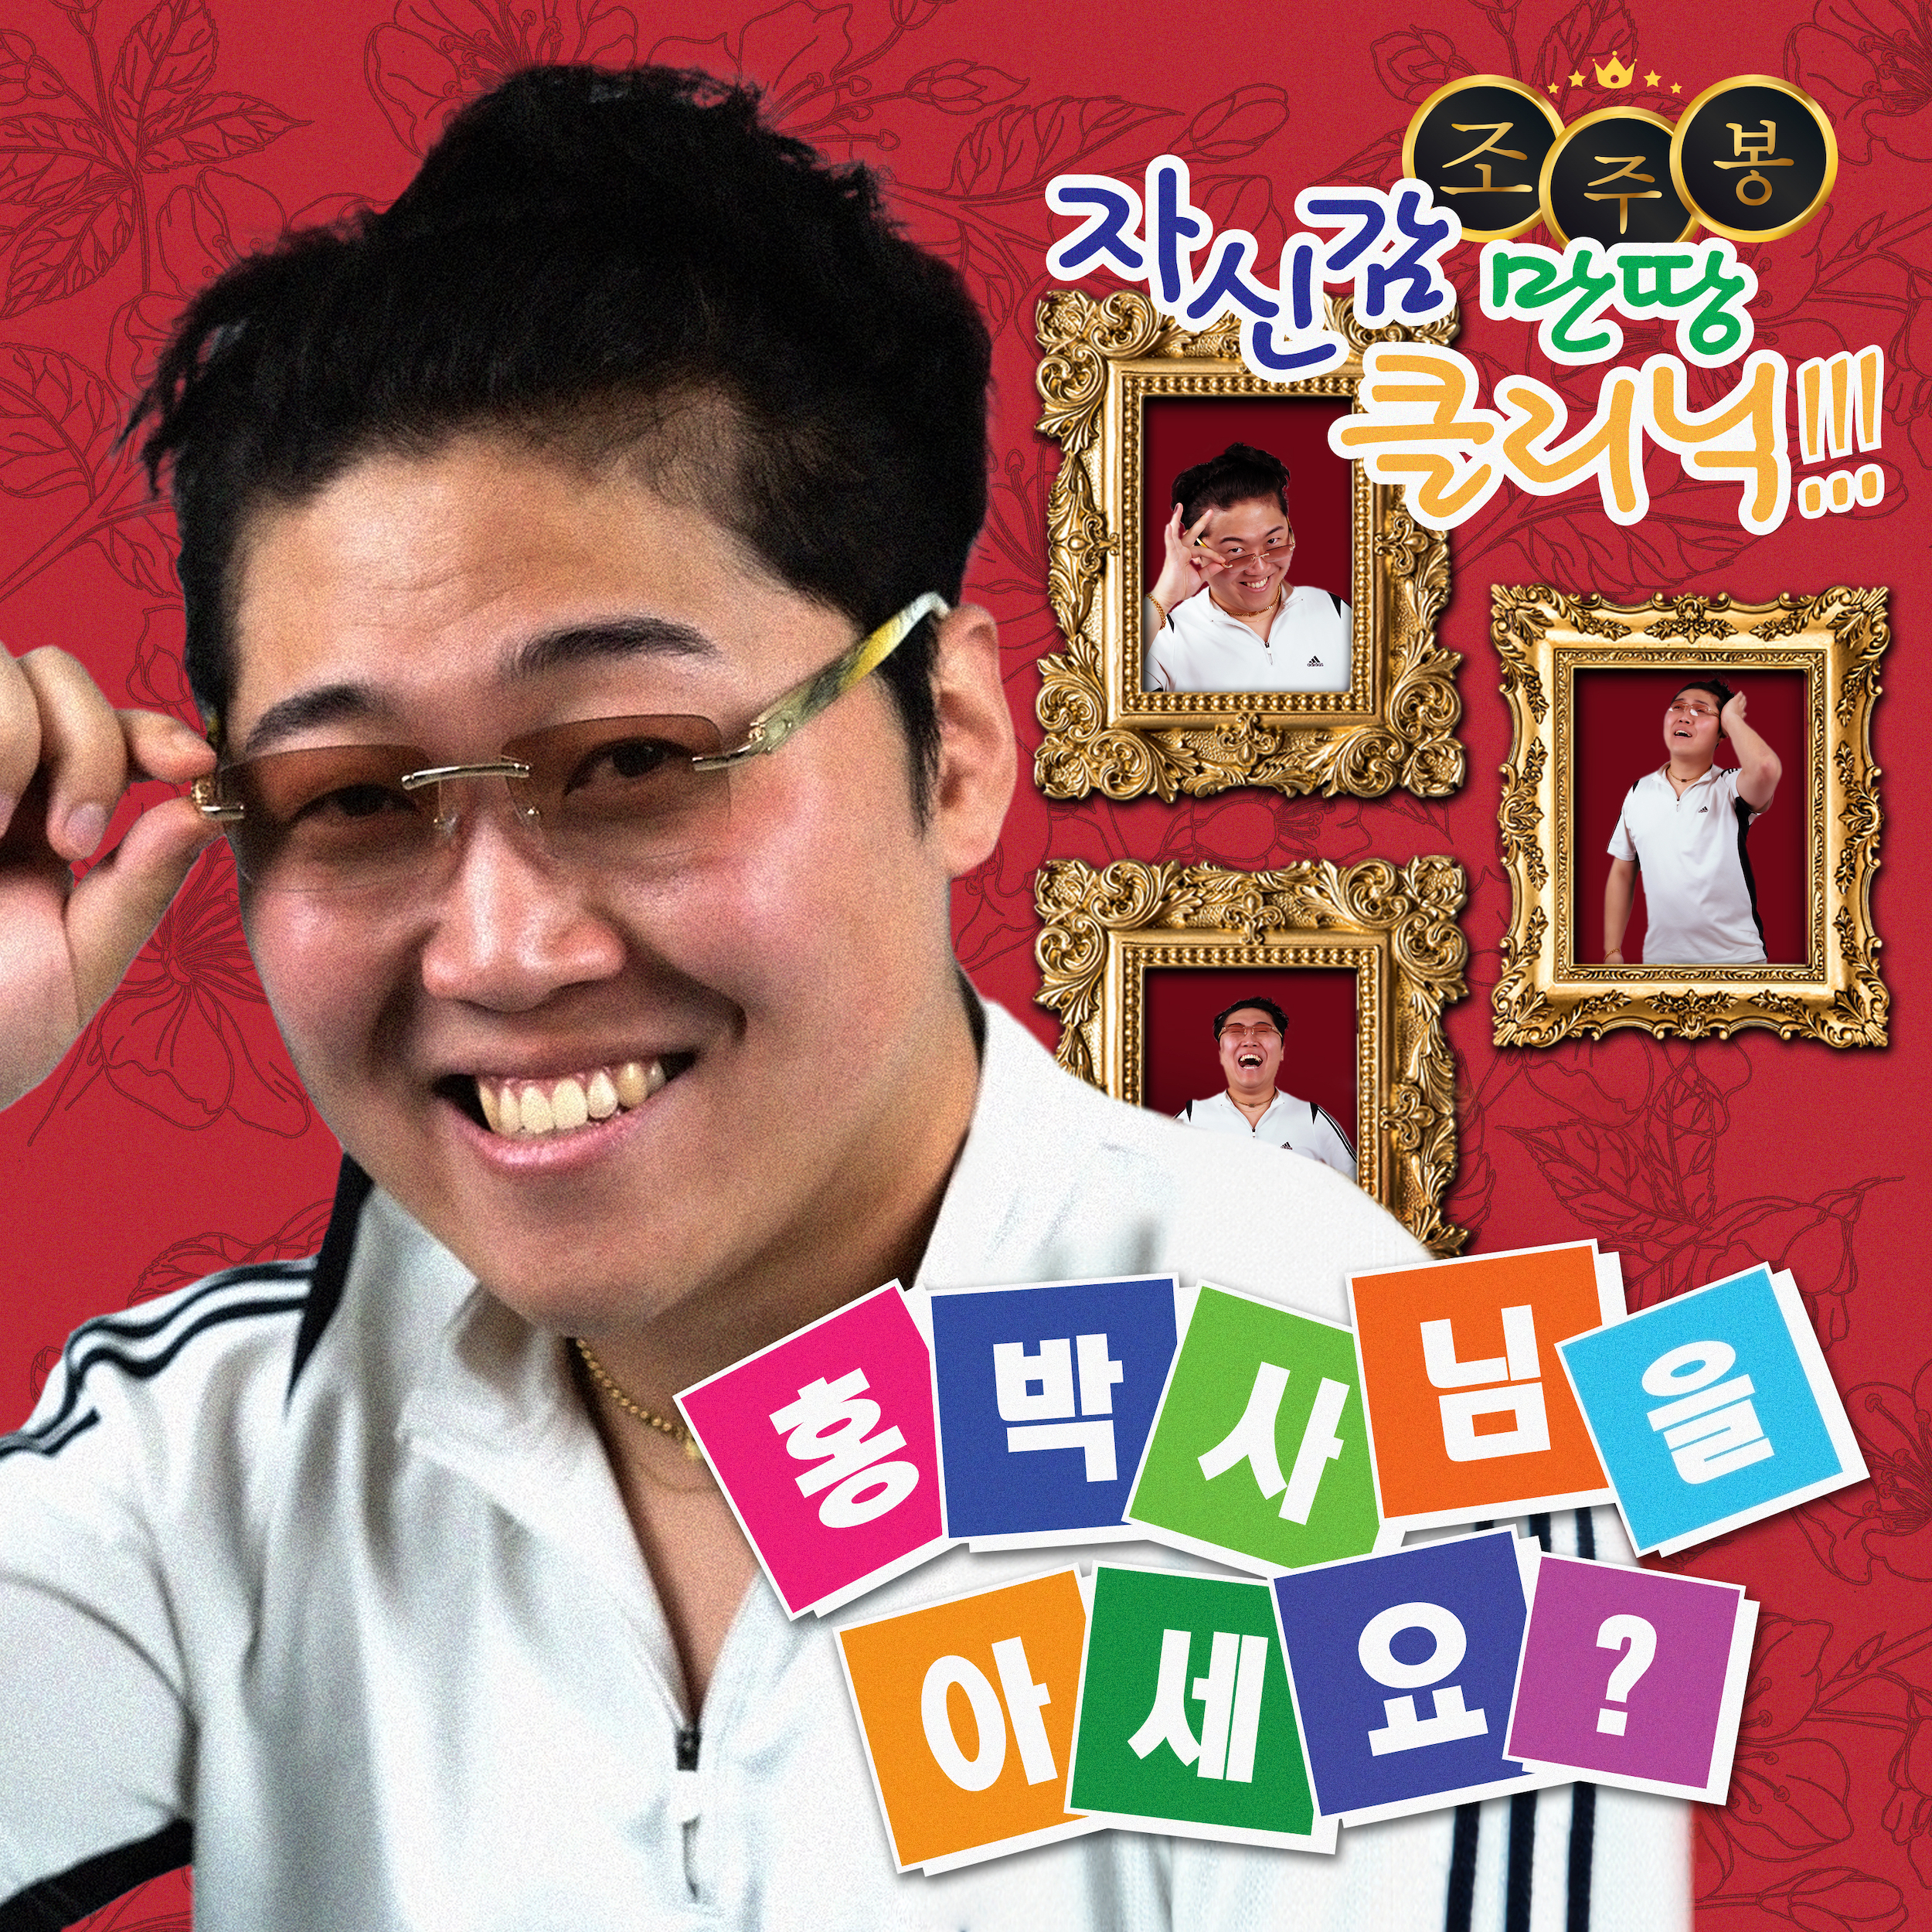 조주봉의 ‘홍박사님을 아세요?’ 디지털 싱글 이미지.